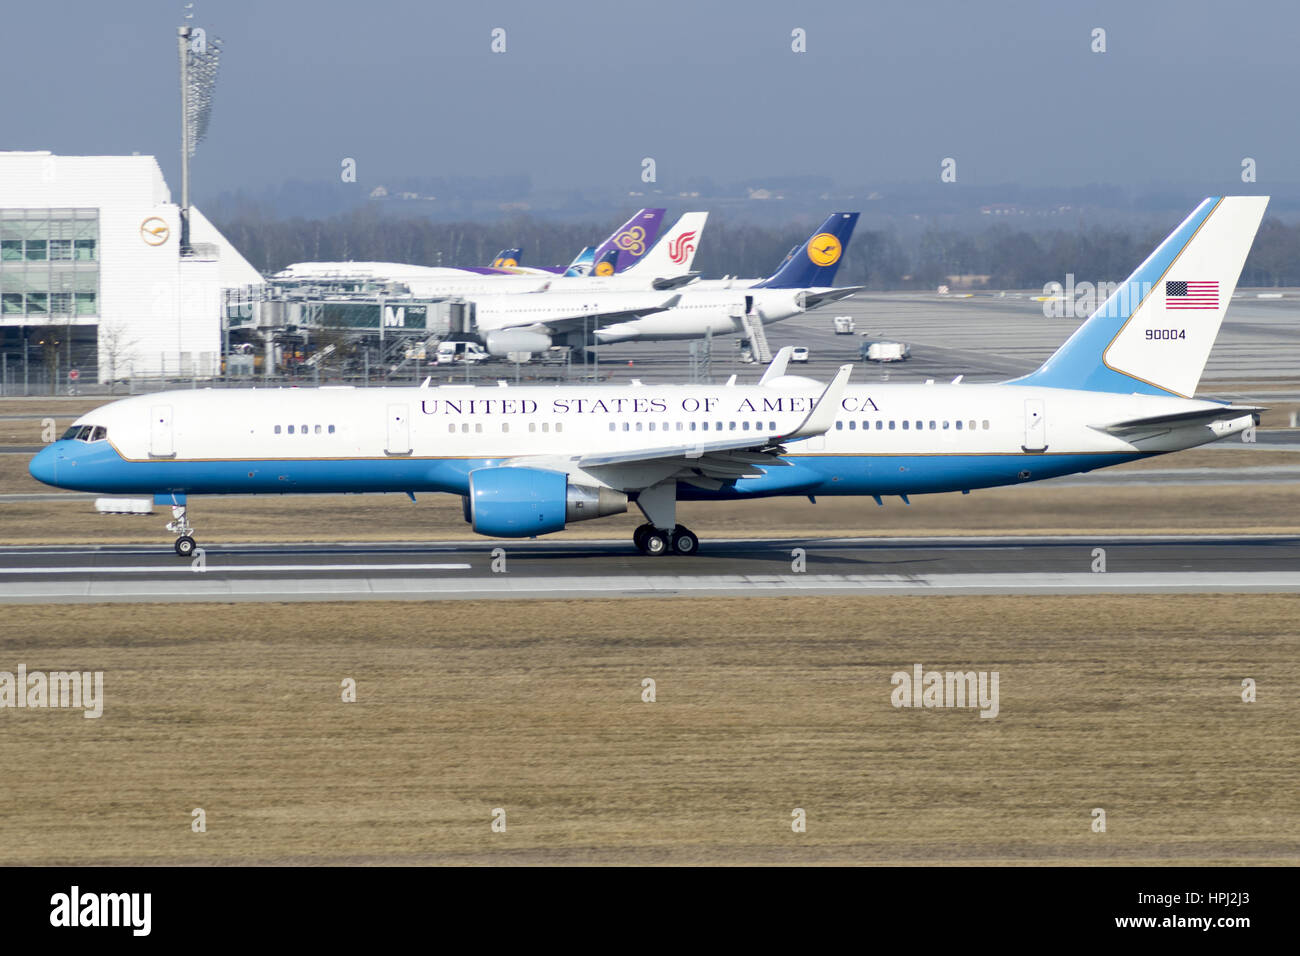 99-0004 Estados Unidos de Amerika avión está aterrizando en el aeropuerto de Munich Foto de stock